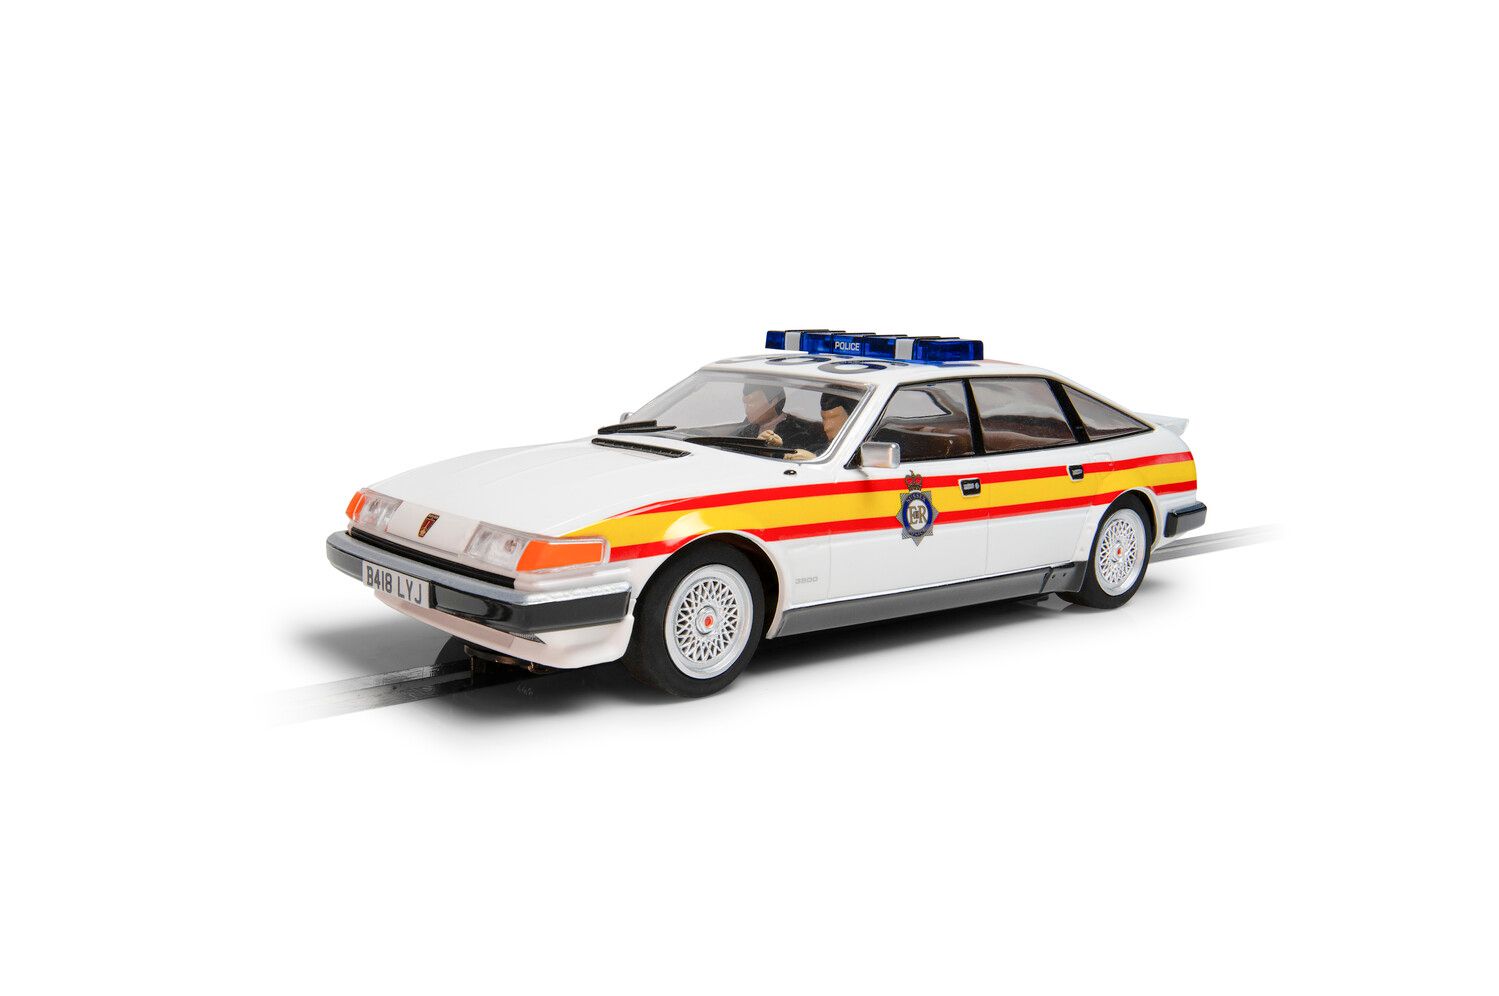 C4342 Rover SD1 - Police Edition